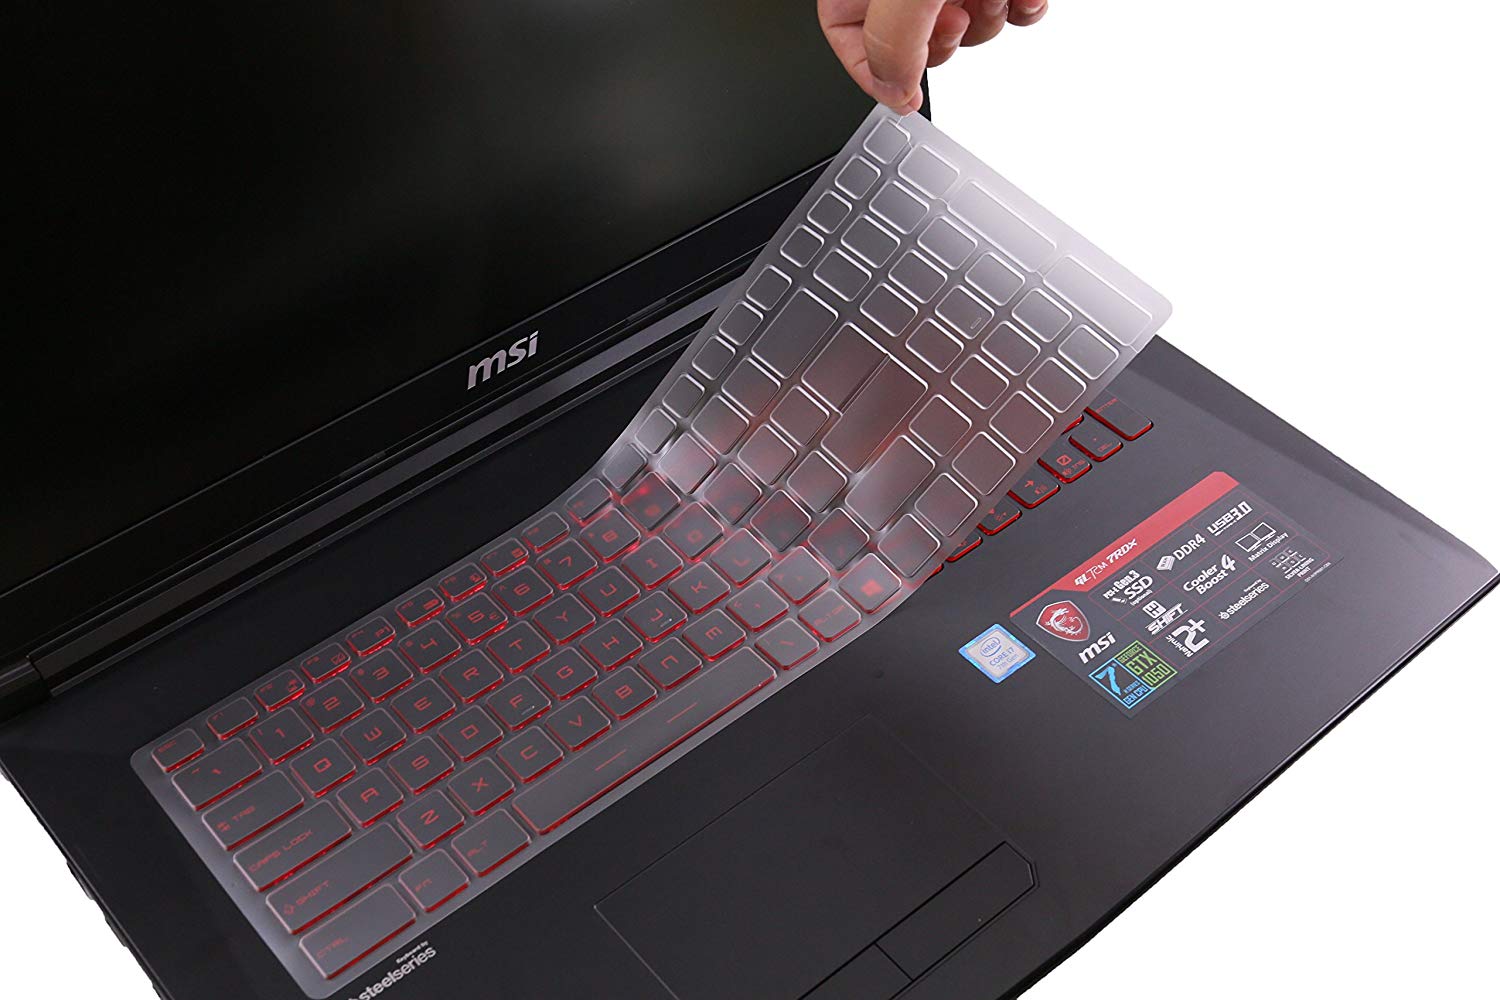 Tpu Keyboard Skin Cover for MSI Alpha 15 Ryzen 15.6 Laptop - iFyx